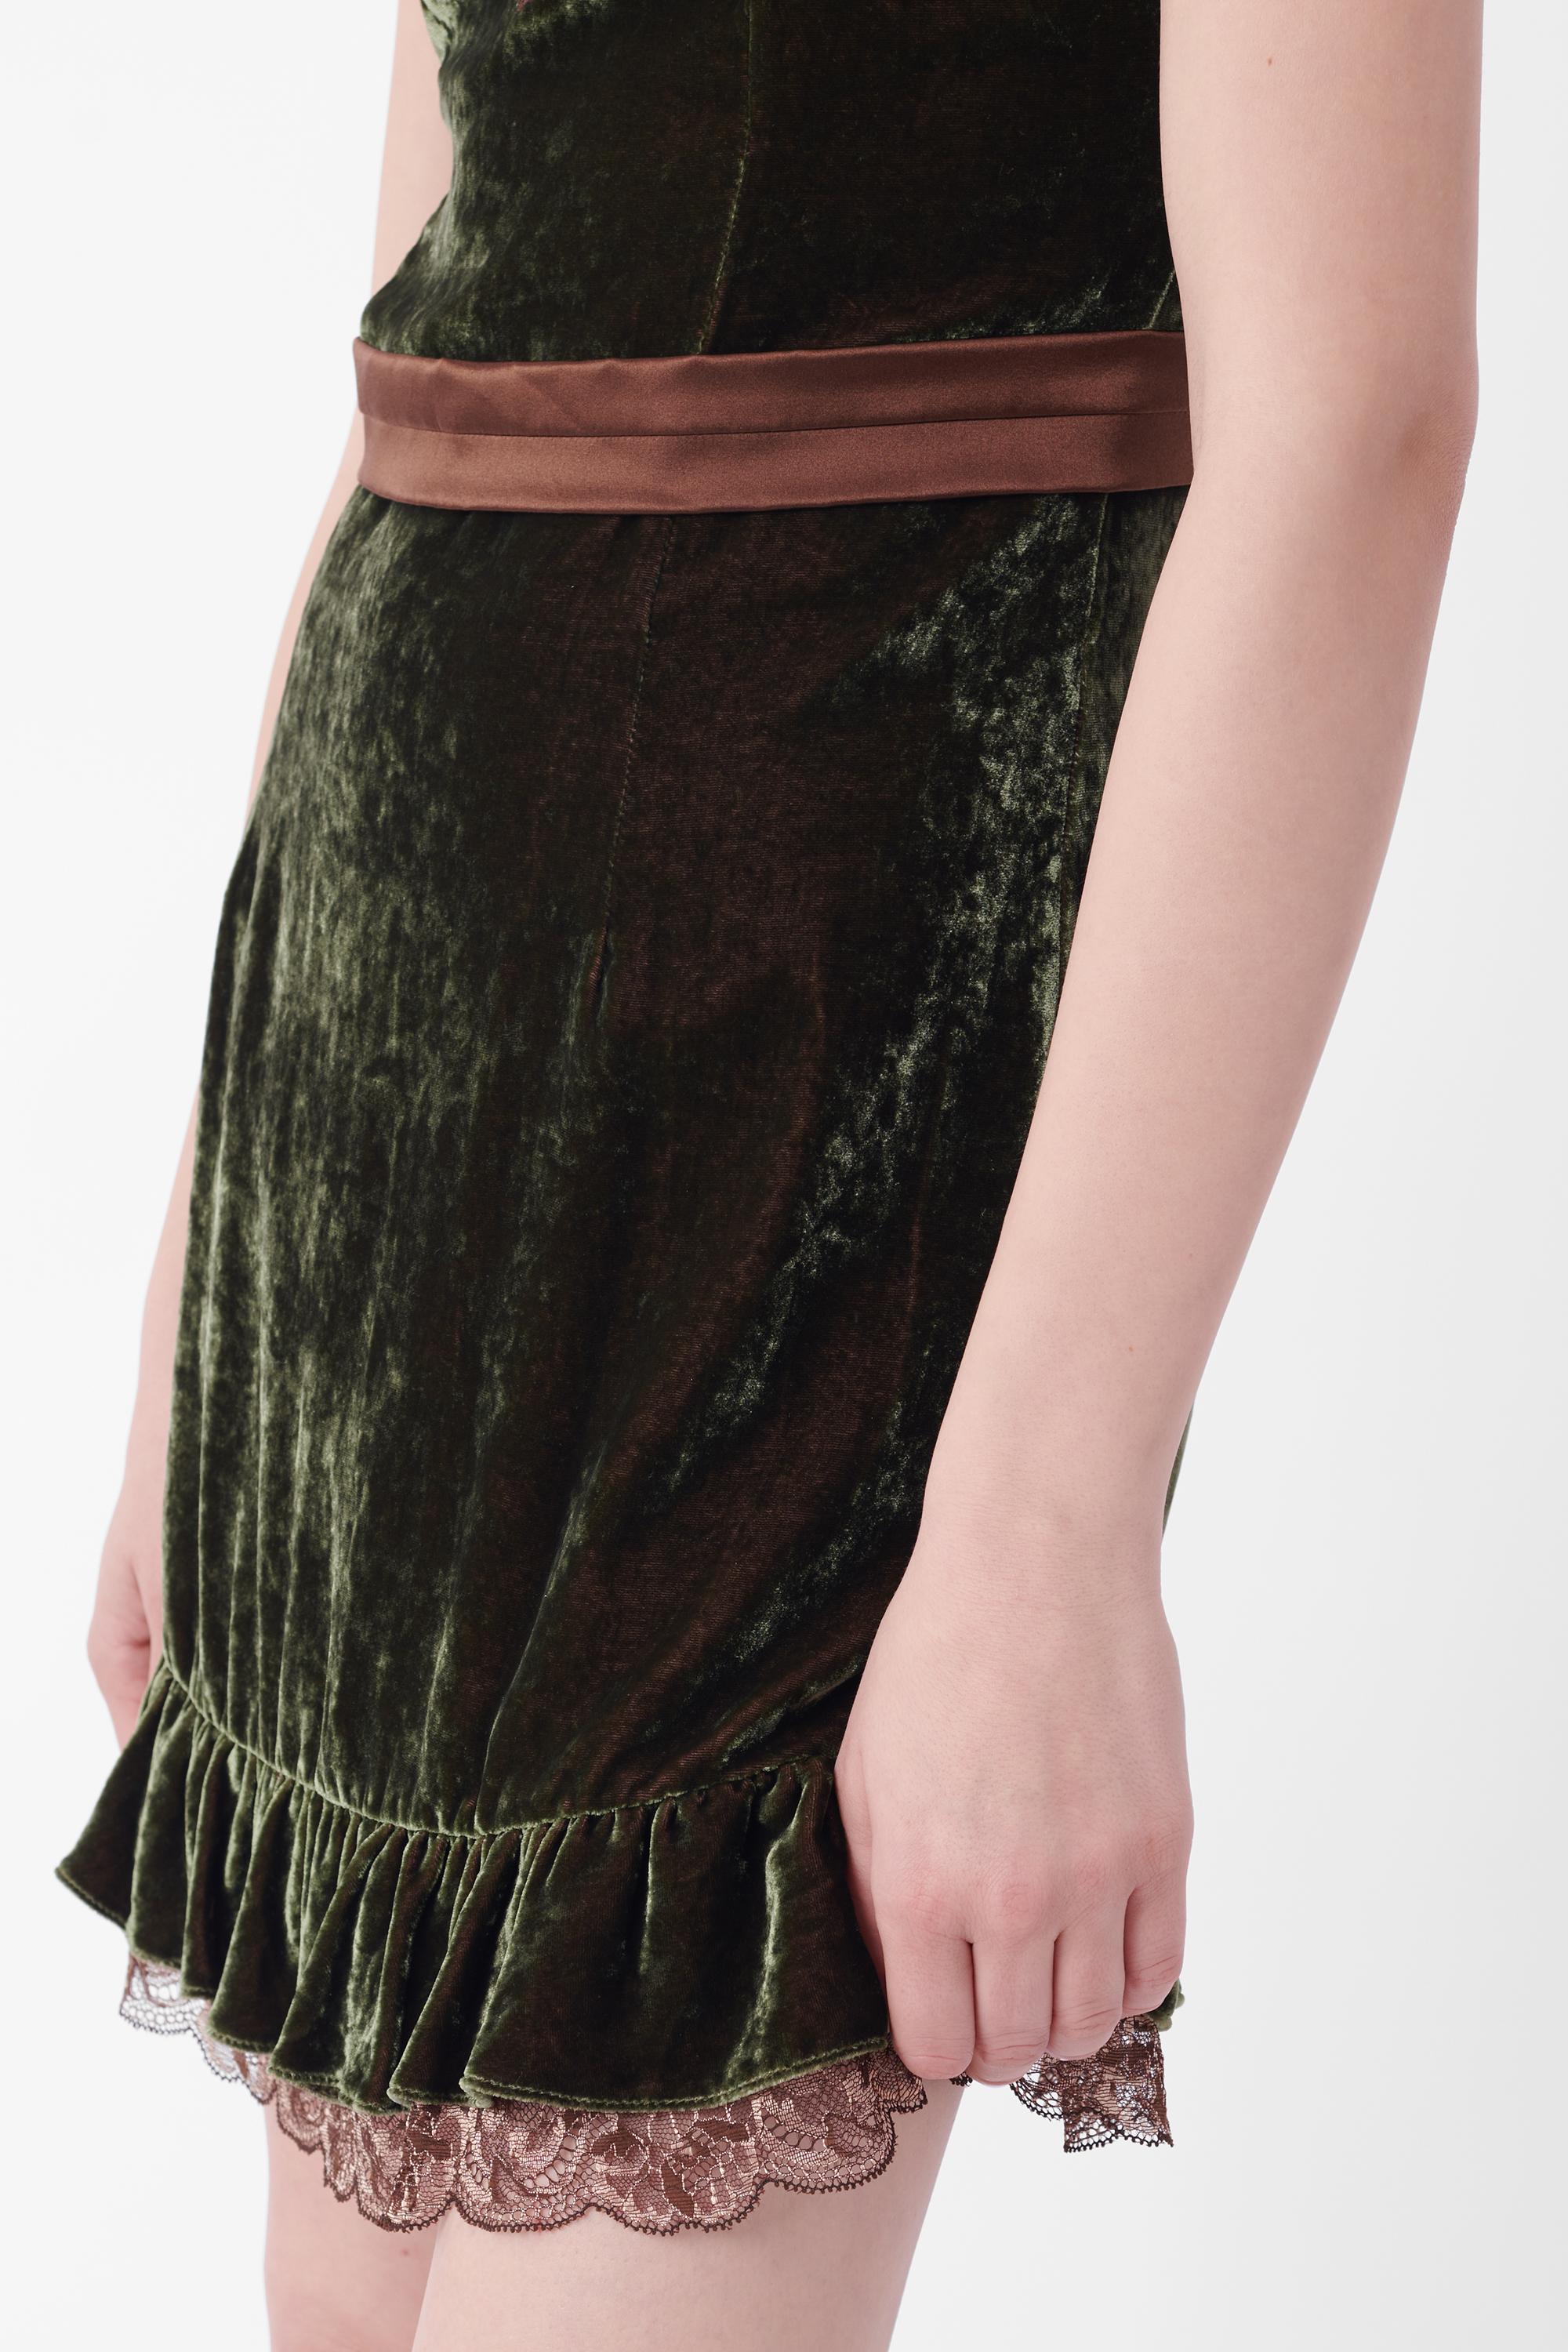 Mini robe en velours vert D.G. 2006. Il se compose de velours vert sur l'ensemble du corps, de fines bretelles marron, de dentelle marron sur la poitrine, d'une ceinture marron avec un nœud au dos, d'une fermeture à glissière au dos, d'une doublure